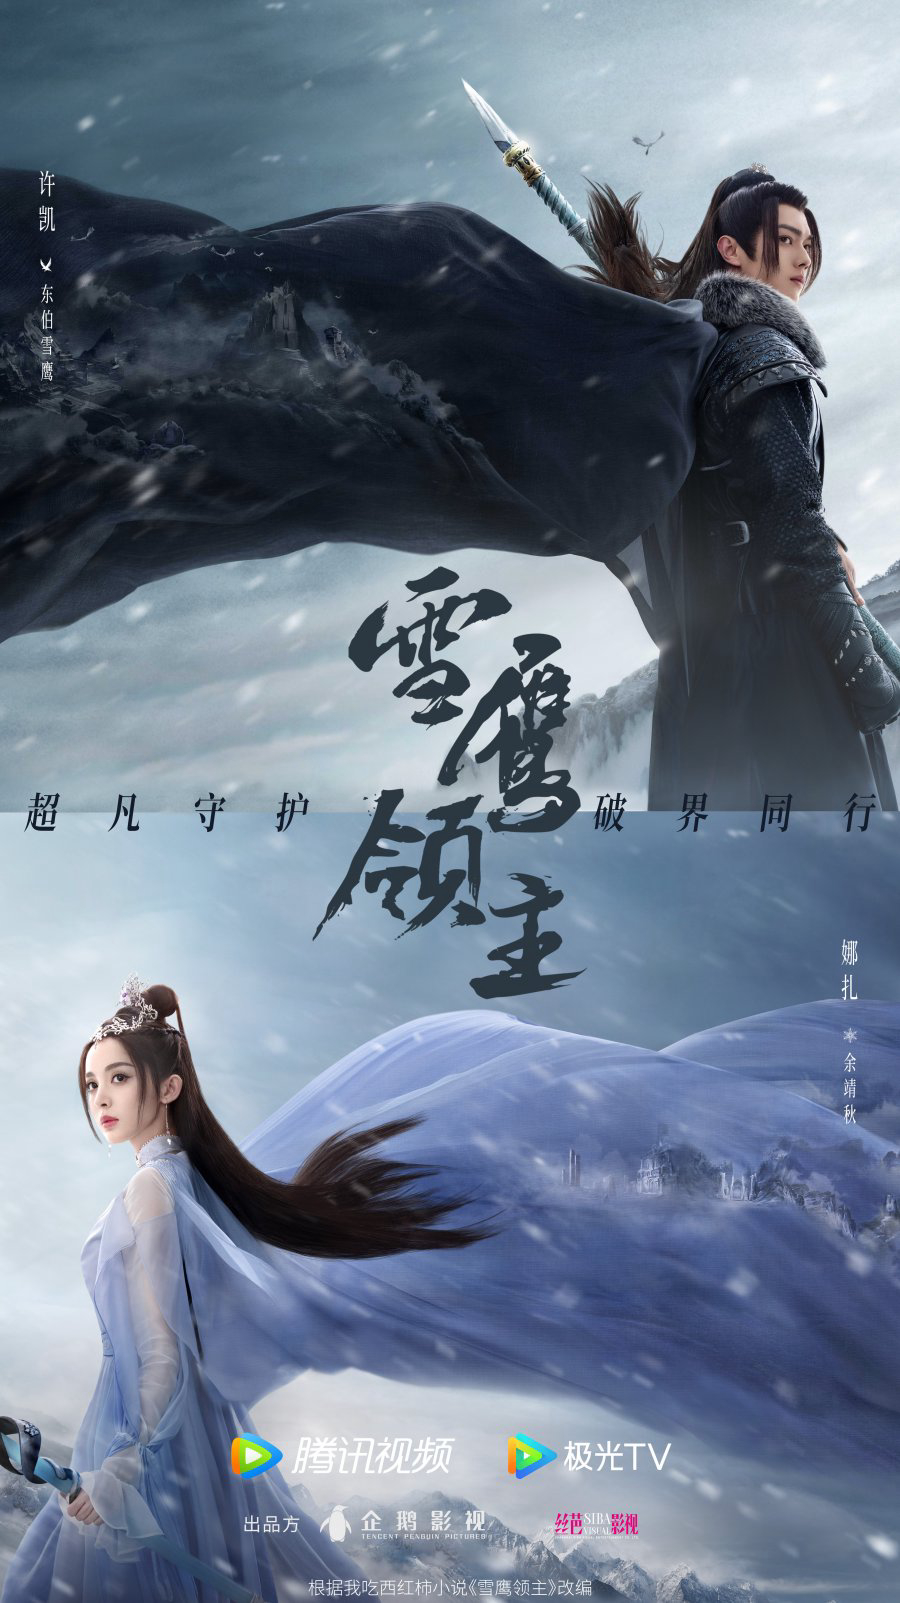 Poster Phim Tuyết Ưng Lĩnh Chủ (Snow Eagle Lord)